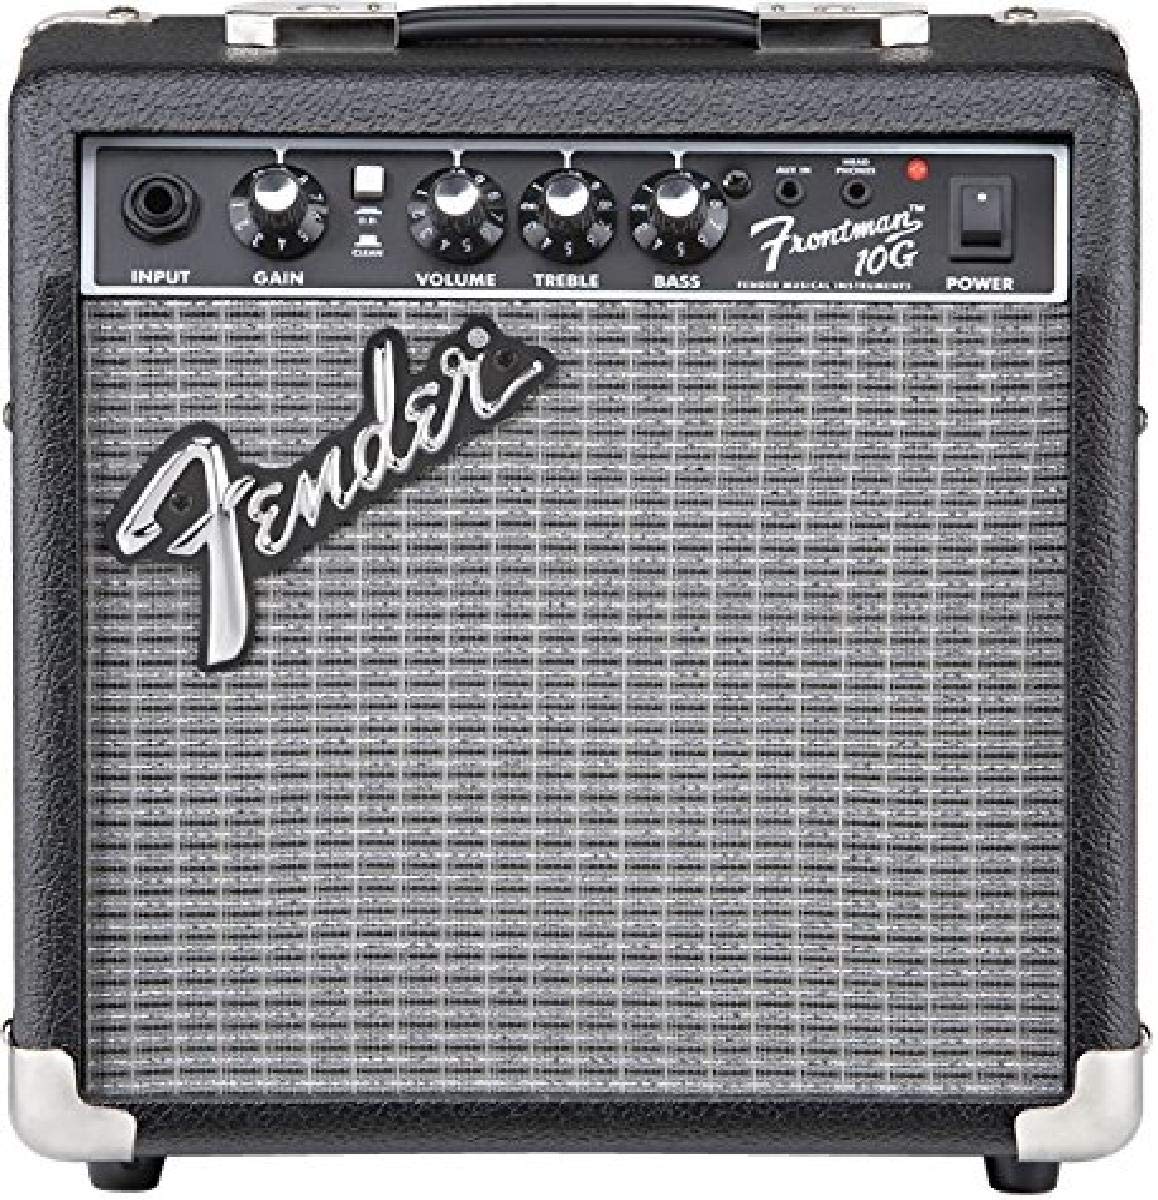 Fender フロントマン 10G ギターアンプ